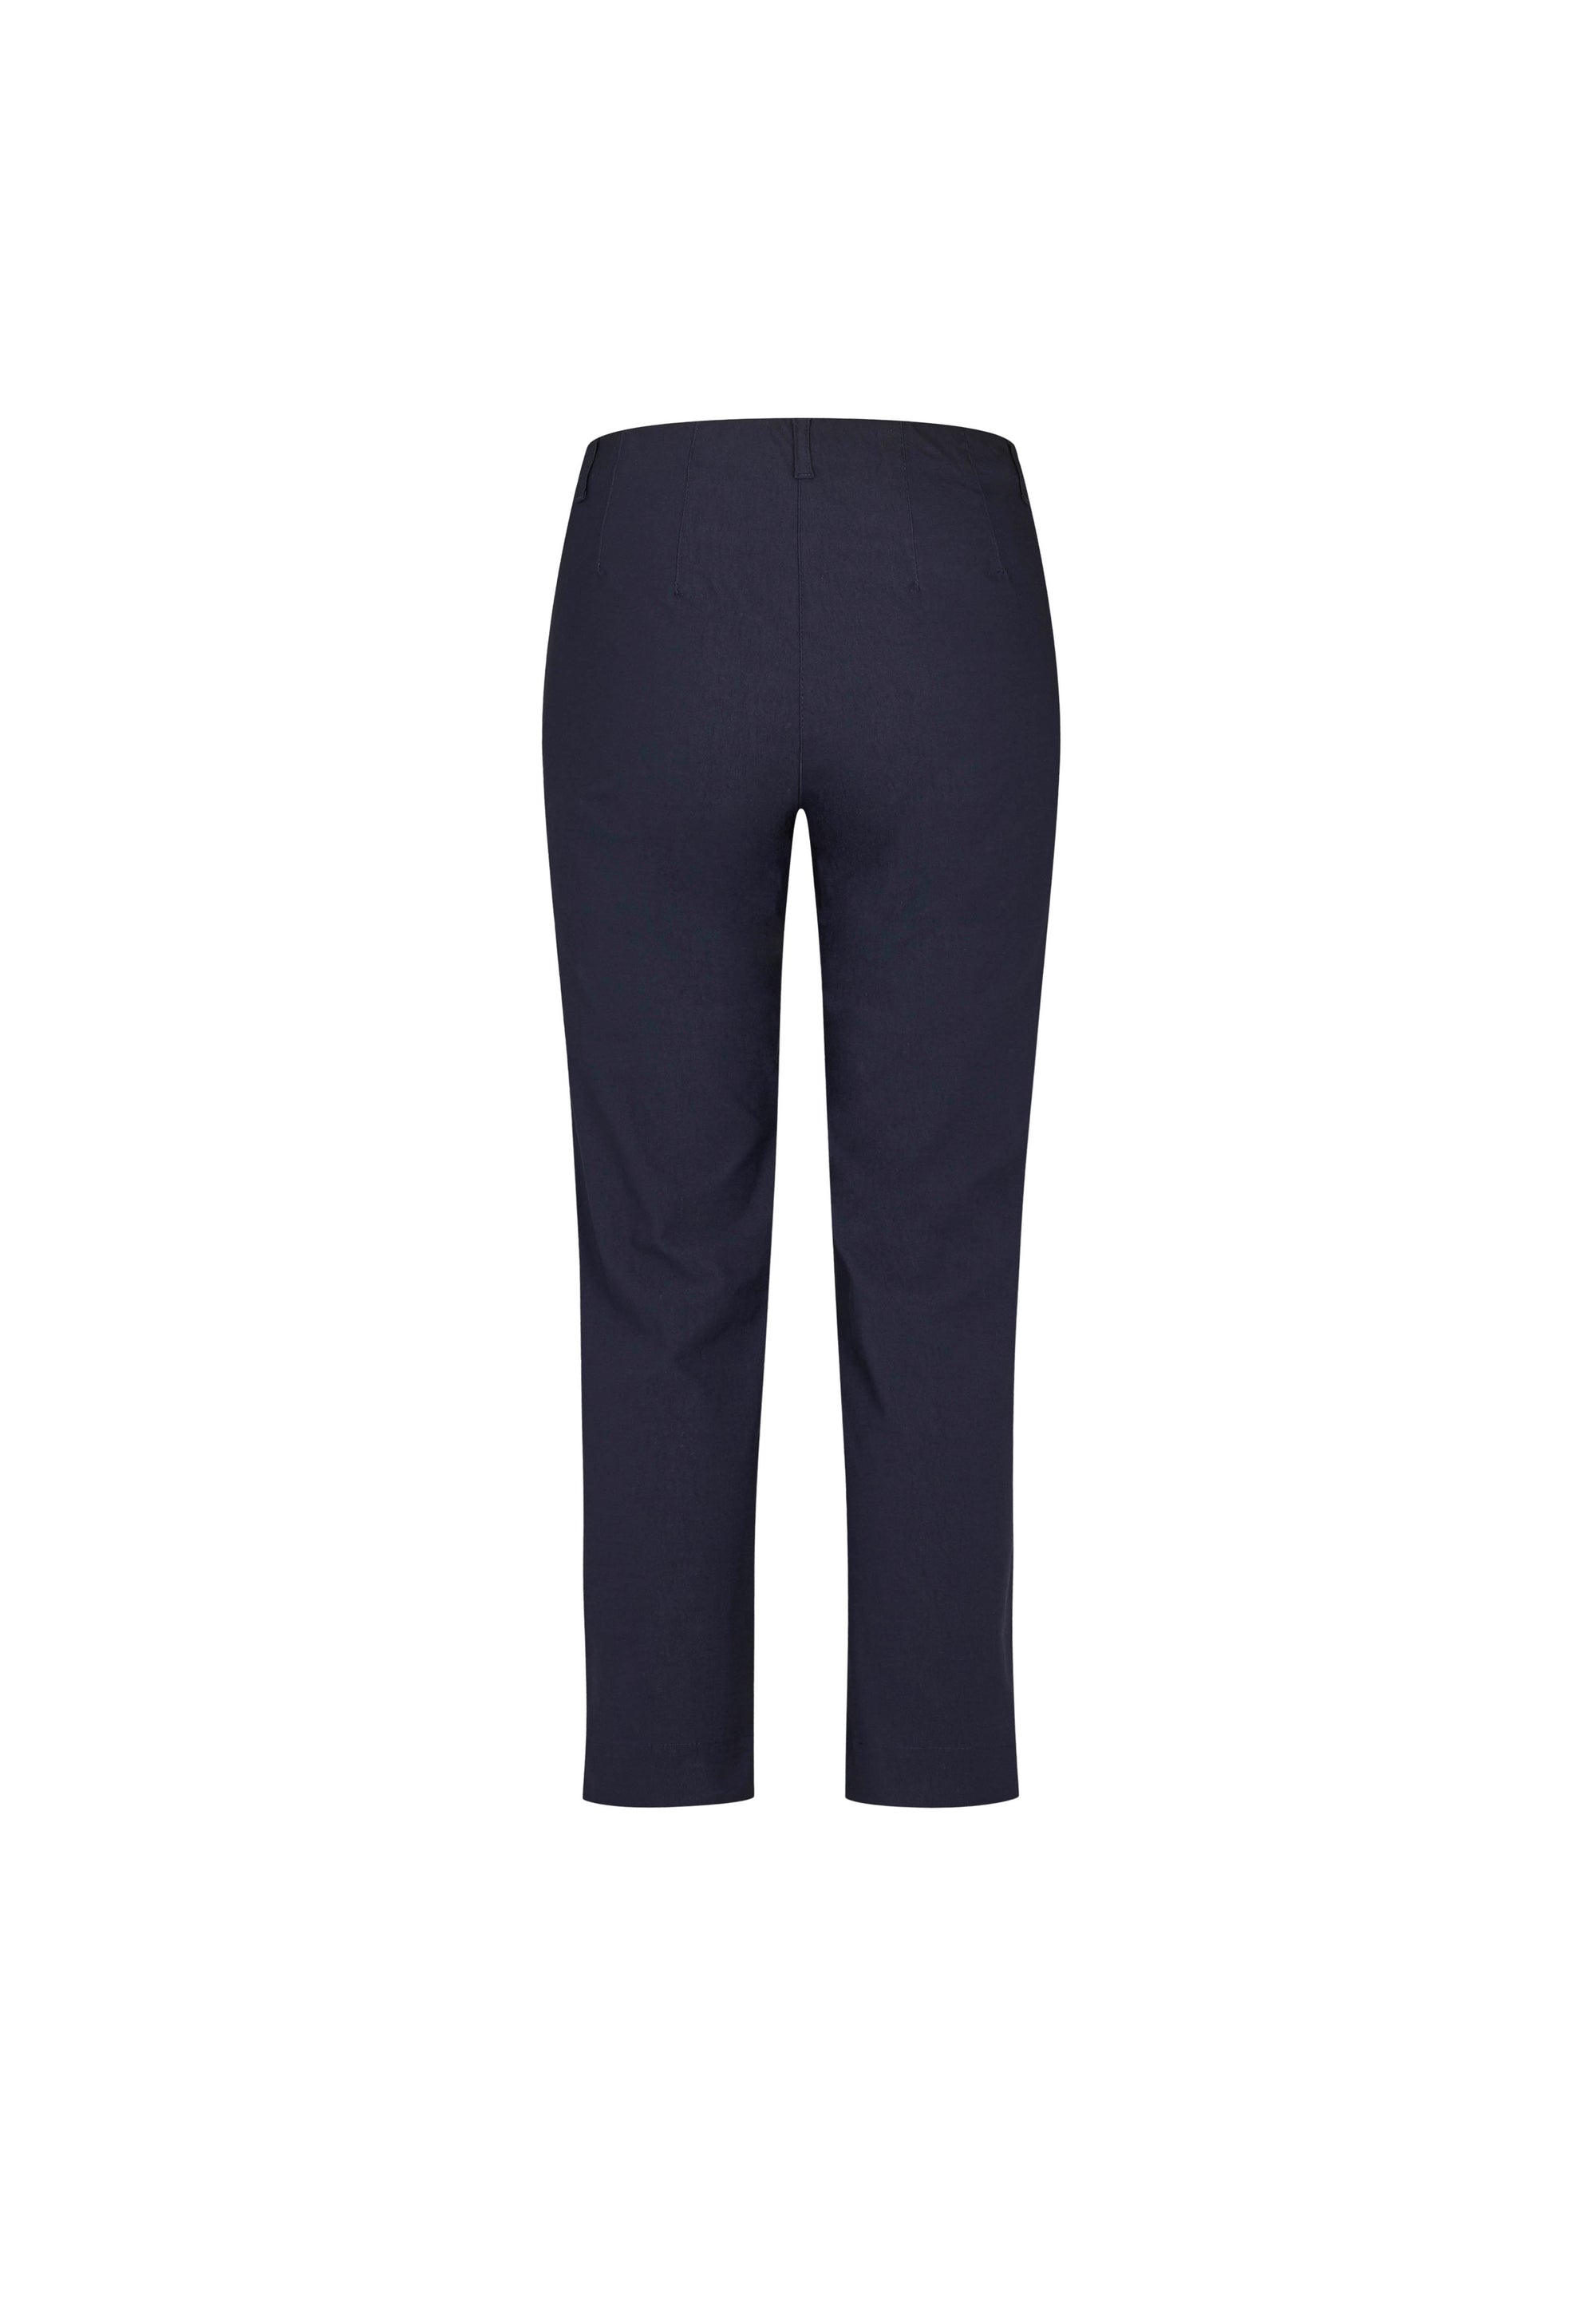 LAURIE Kelly Regular - Short Length Trousers REGULAR 49970 Navy